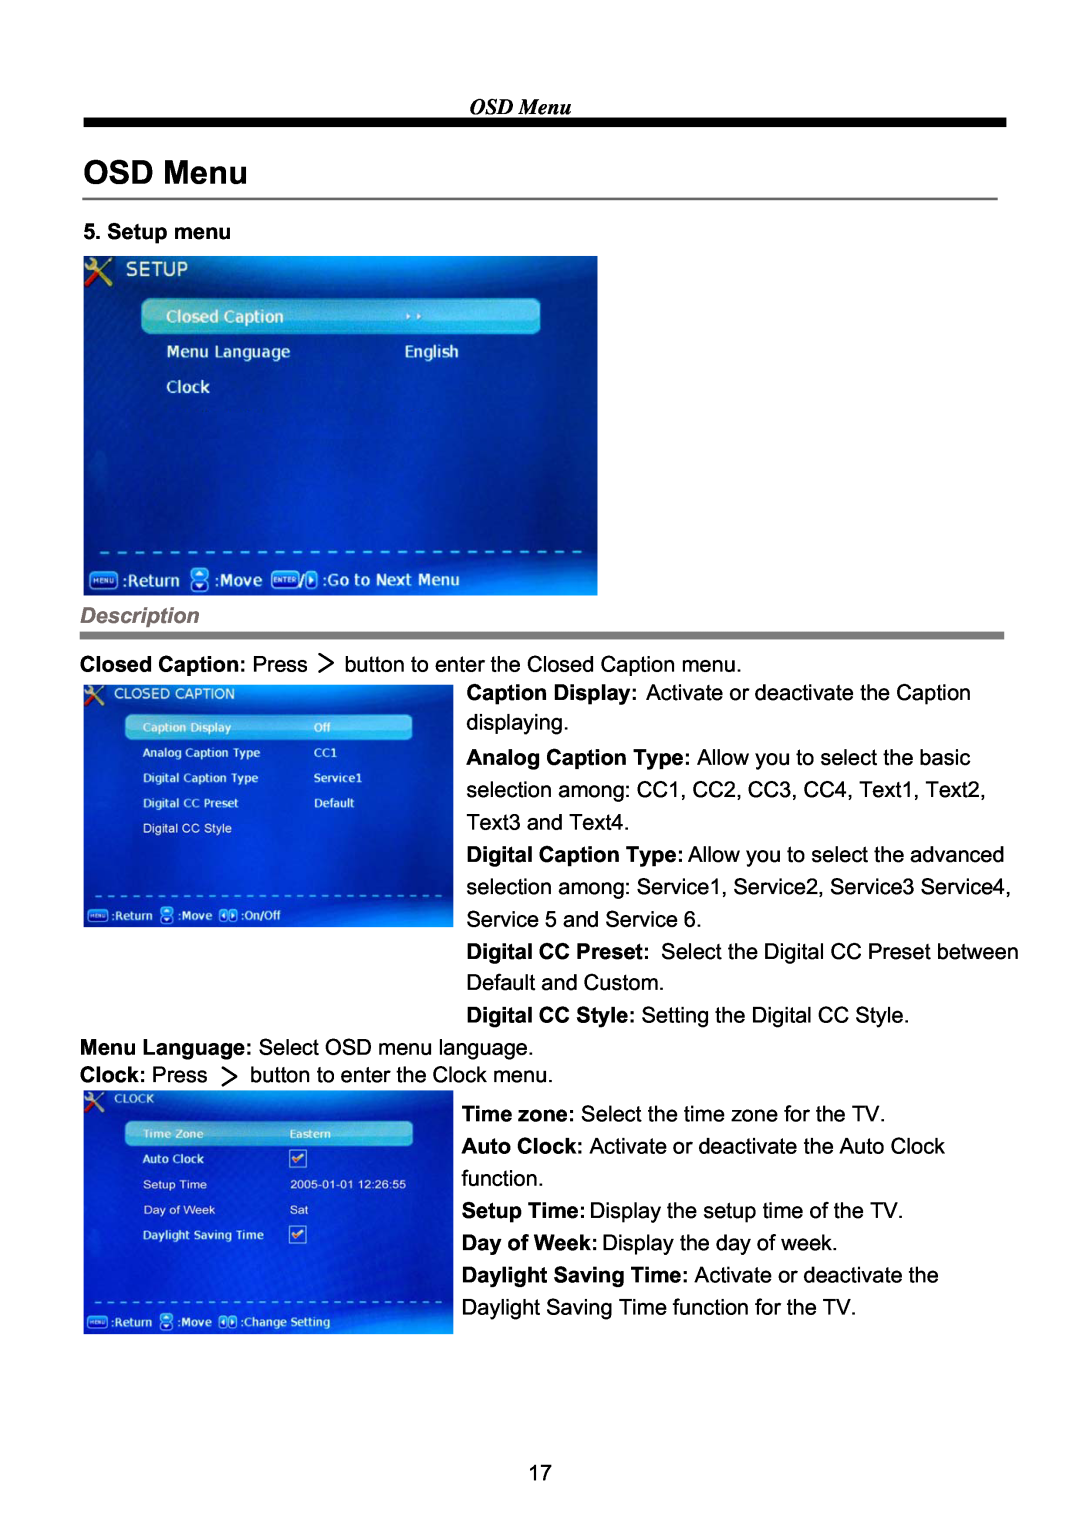 ProScan PLCD3903A manual OSD Menu, Setup menu, Description, Closed Caption Press, Clock Press 